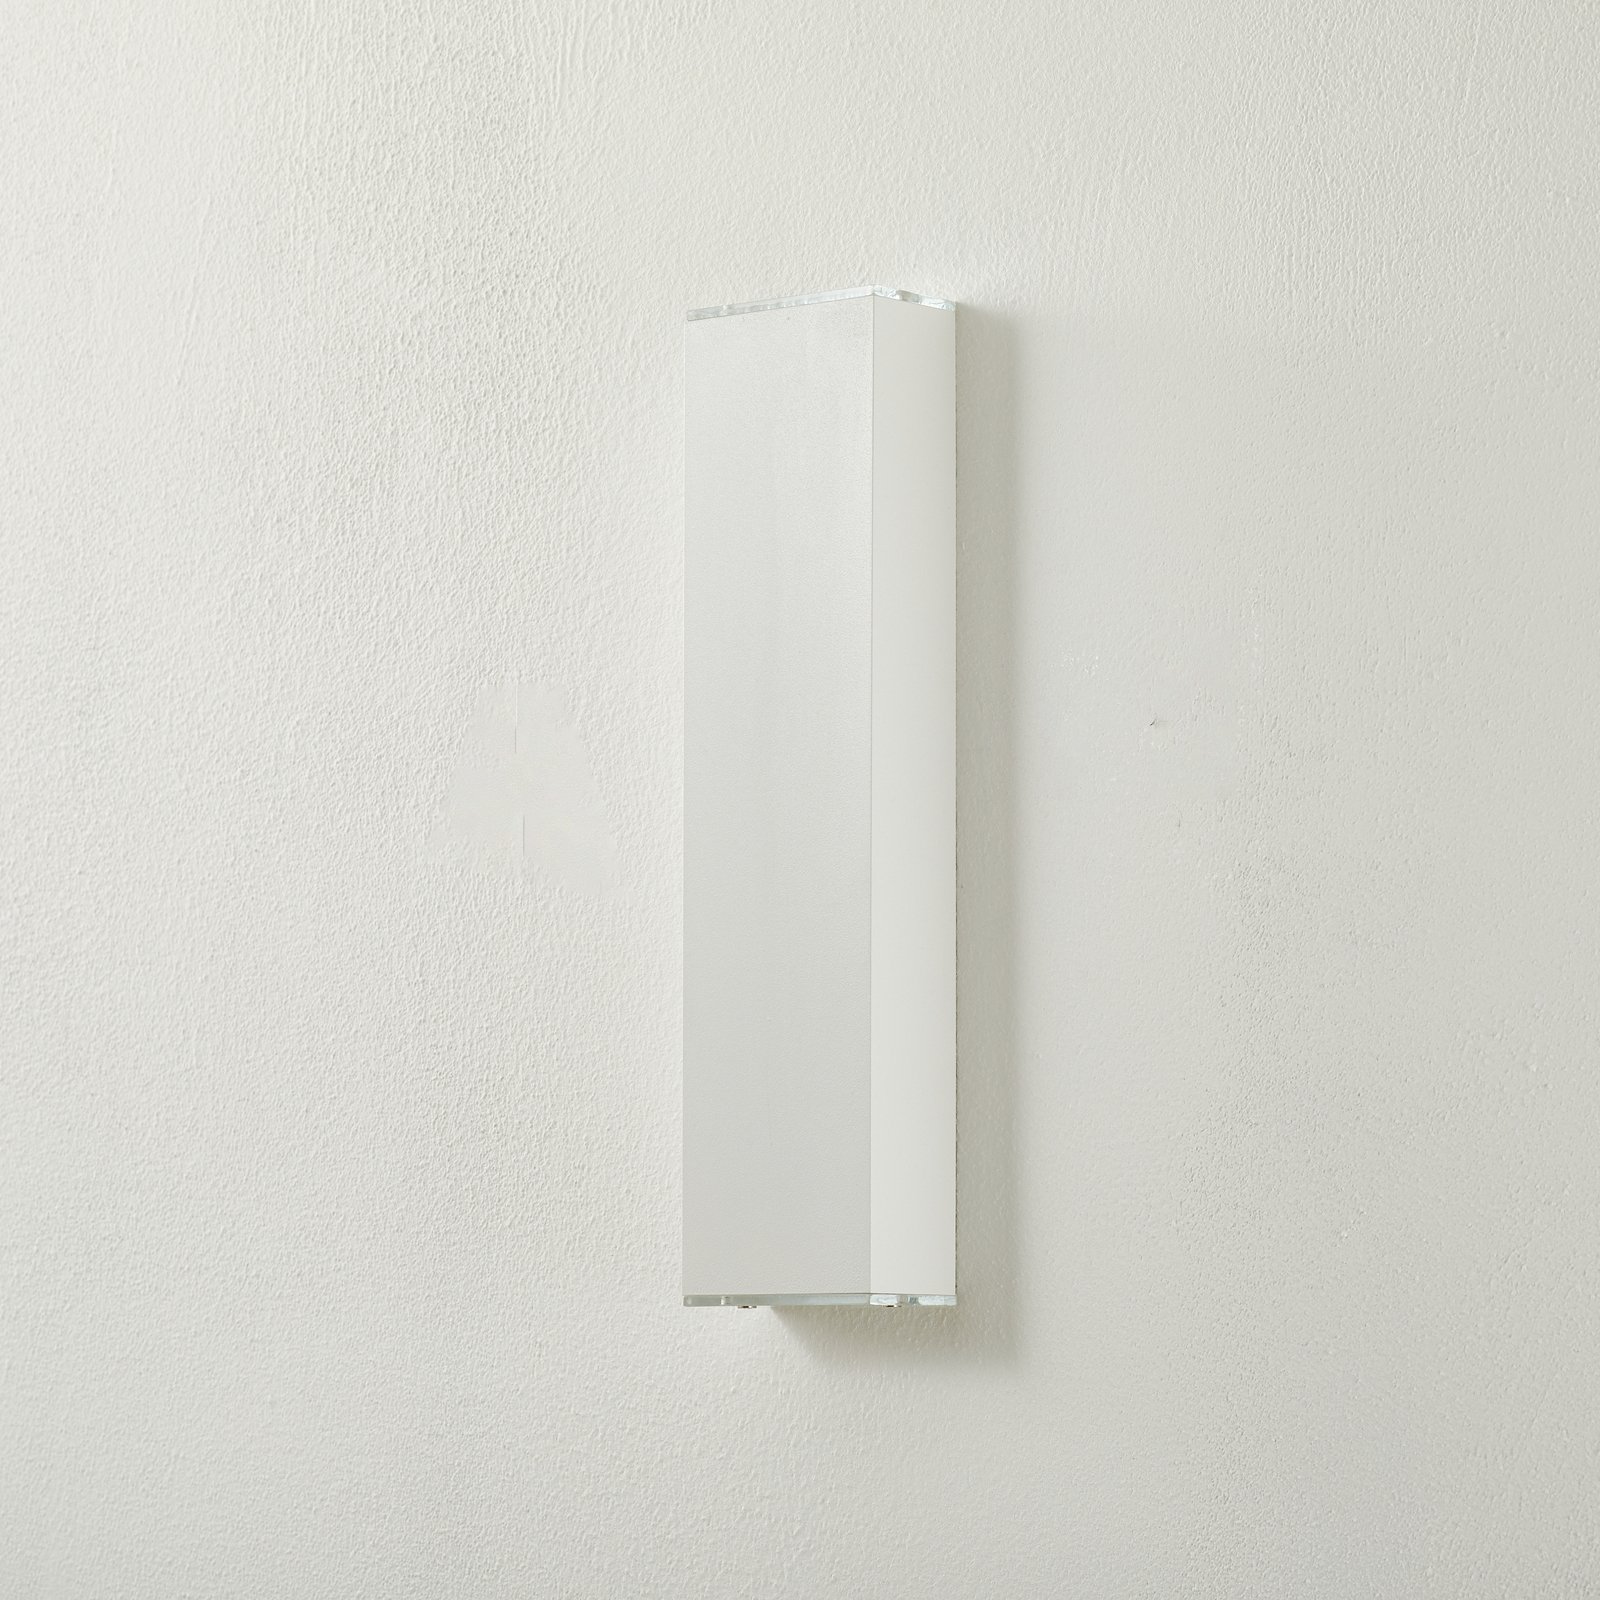 Lucande Anita LED wall light white height 36 cm